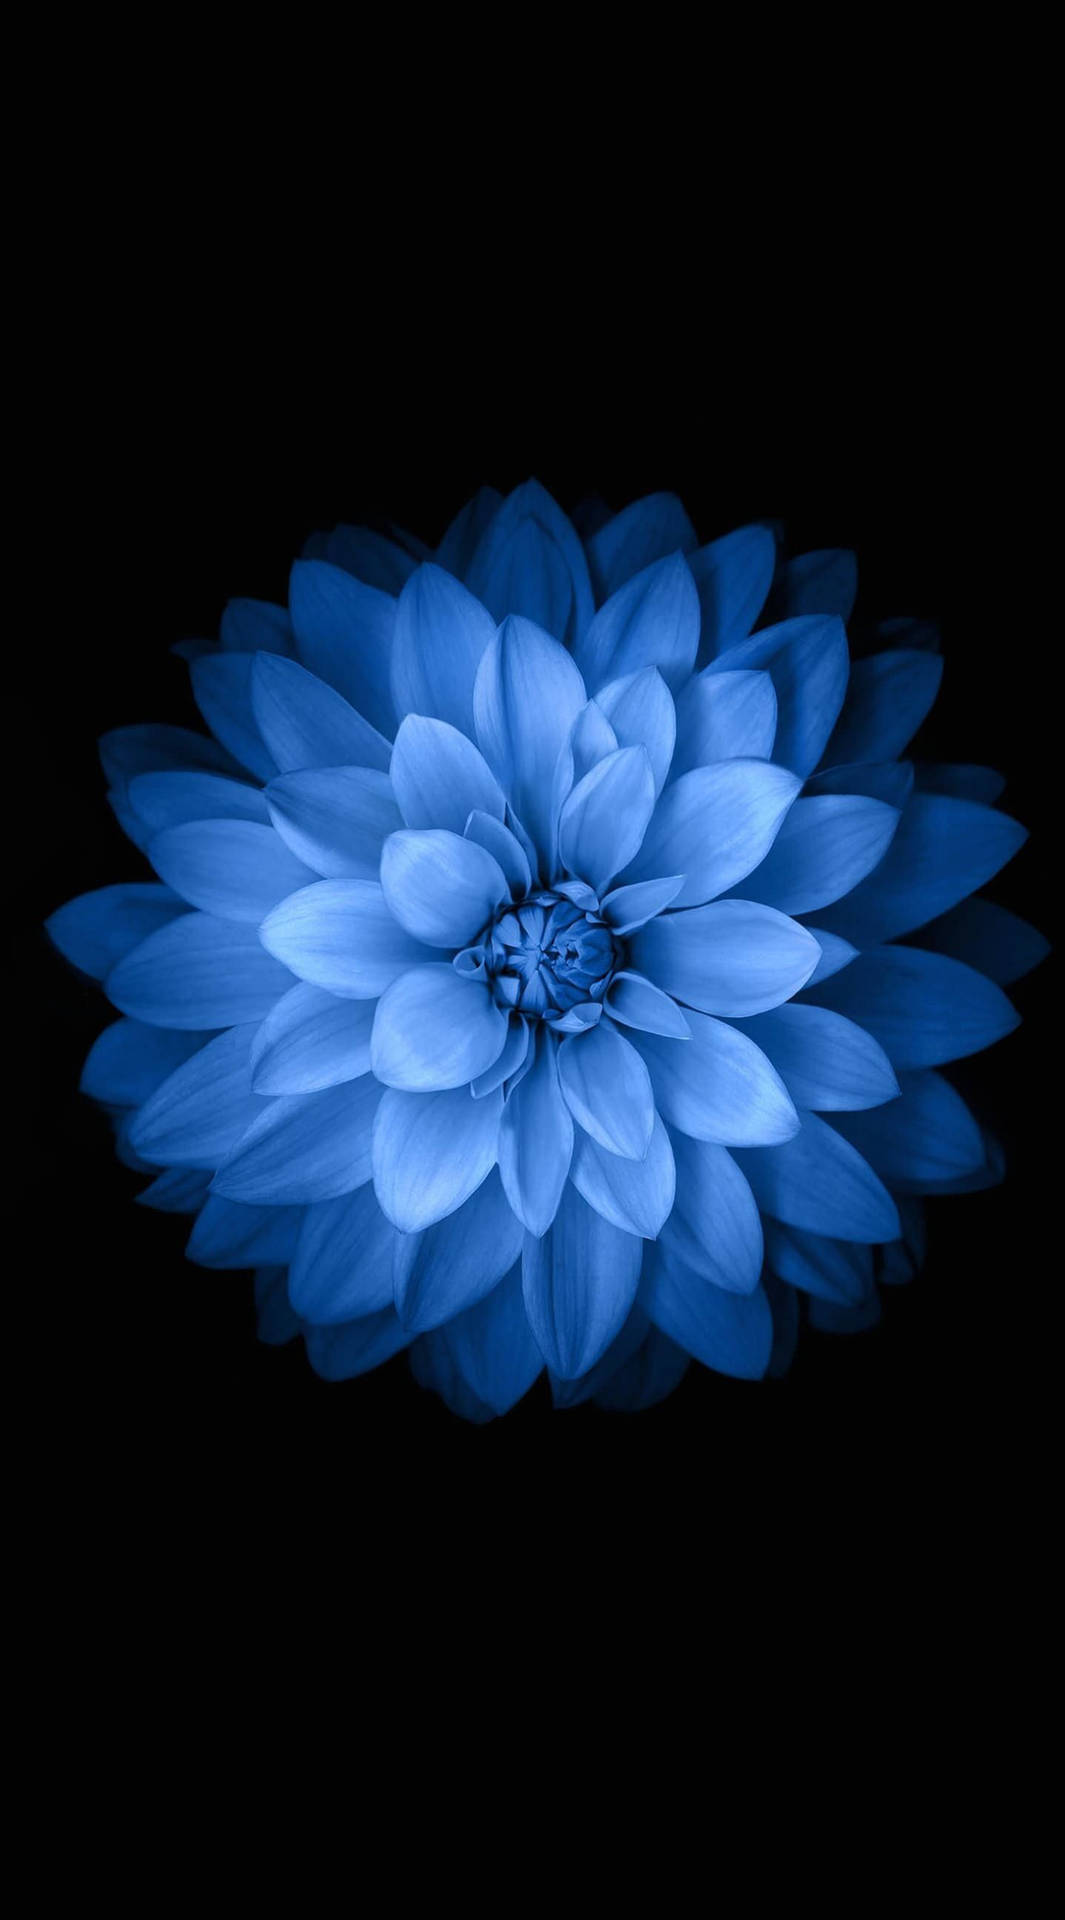 Default Blue Flower Original Iphone 6 Wallpaper